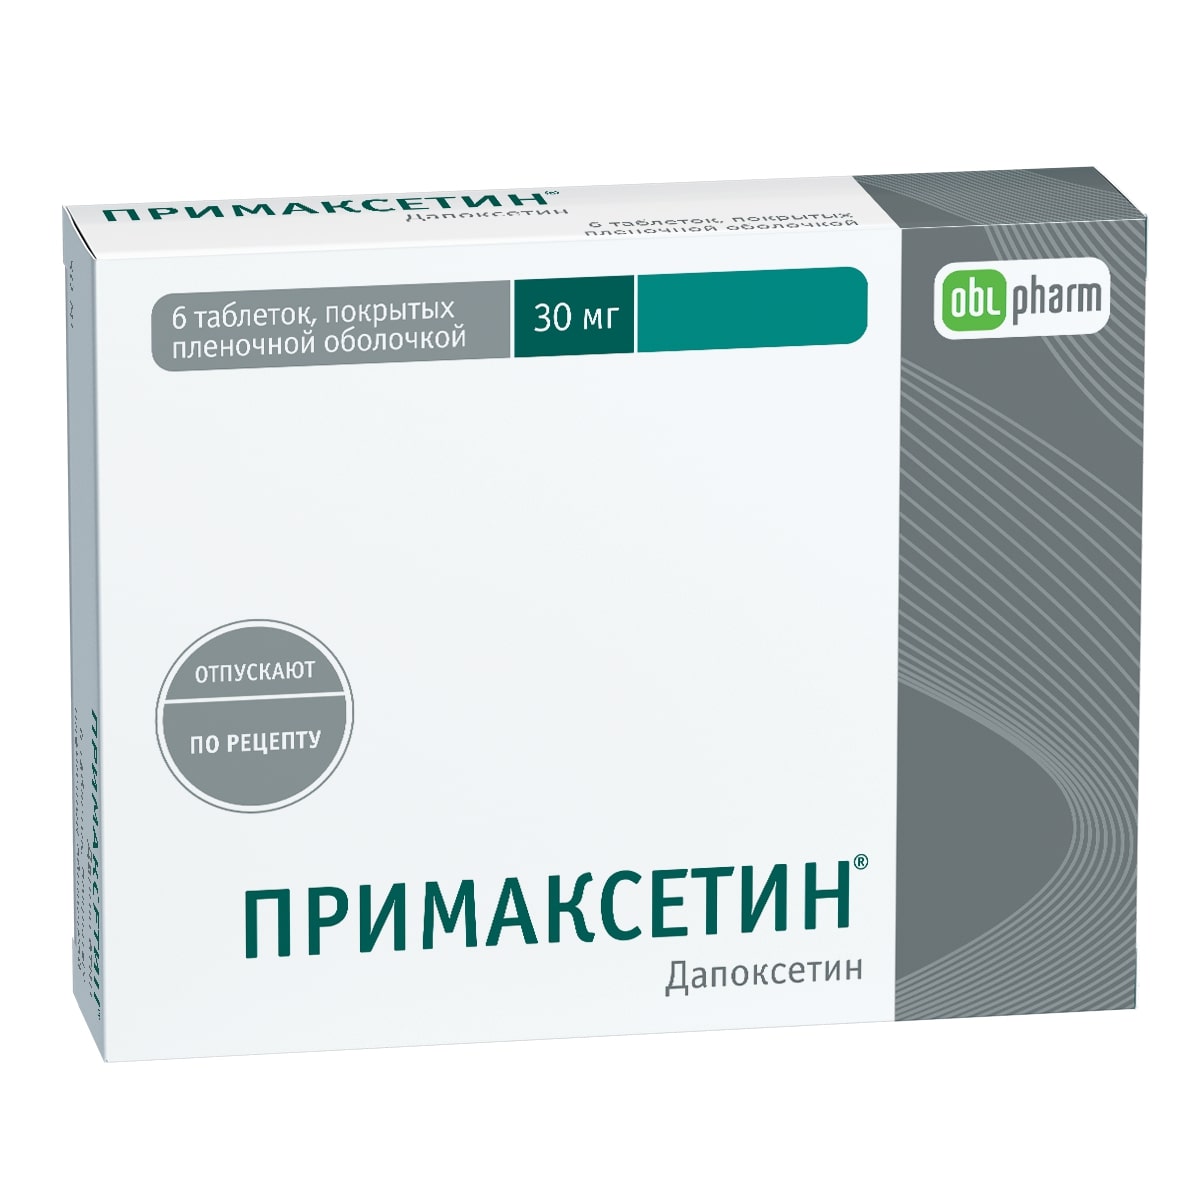 Лекарственные средства Obl pharm Примаксетин 30 мг | отзывы